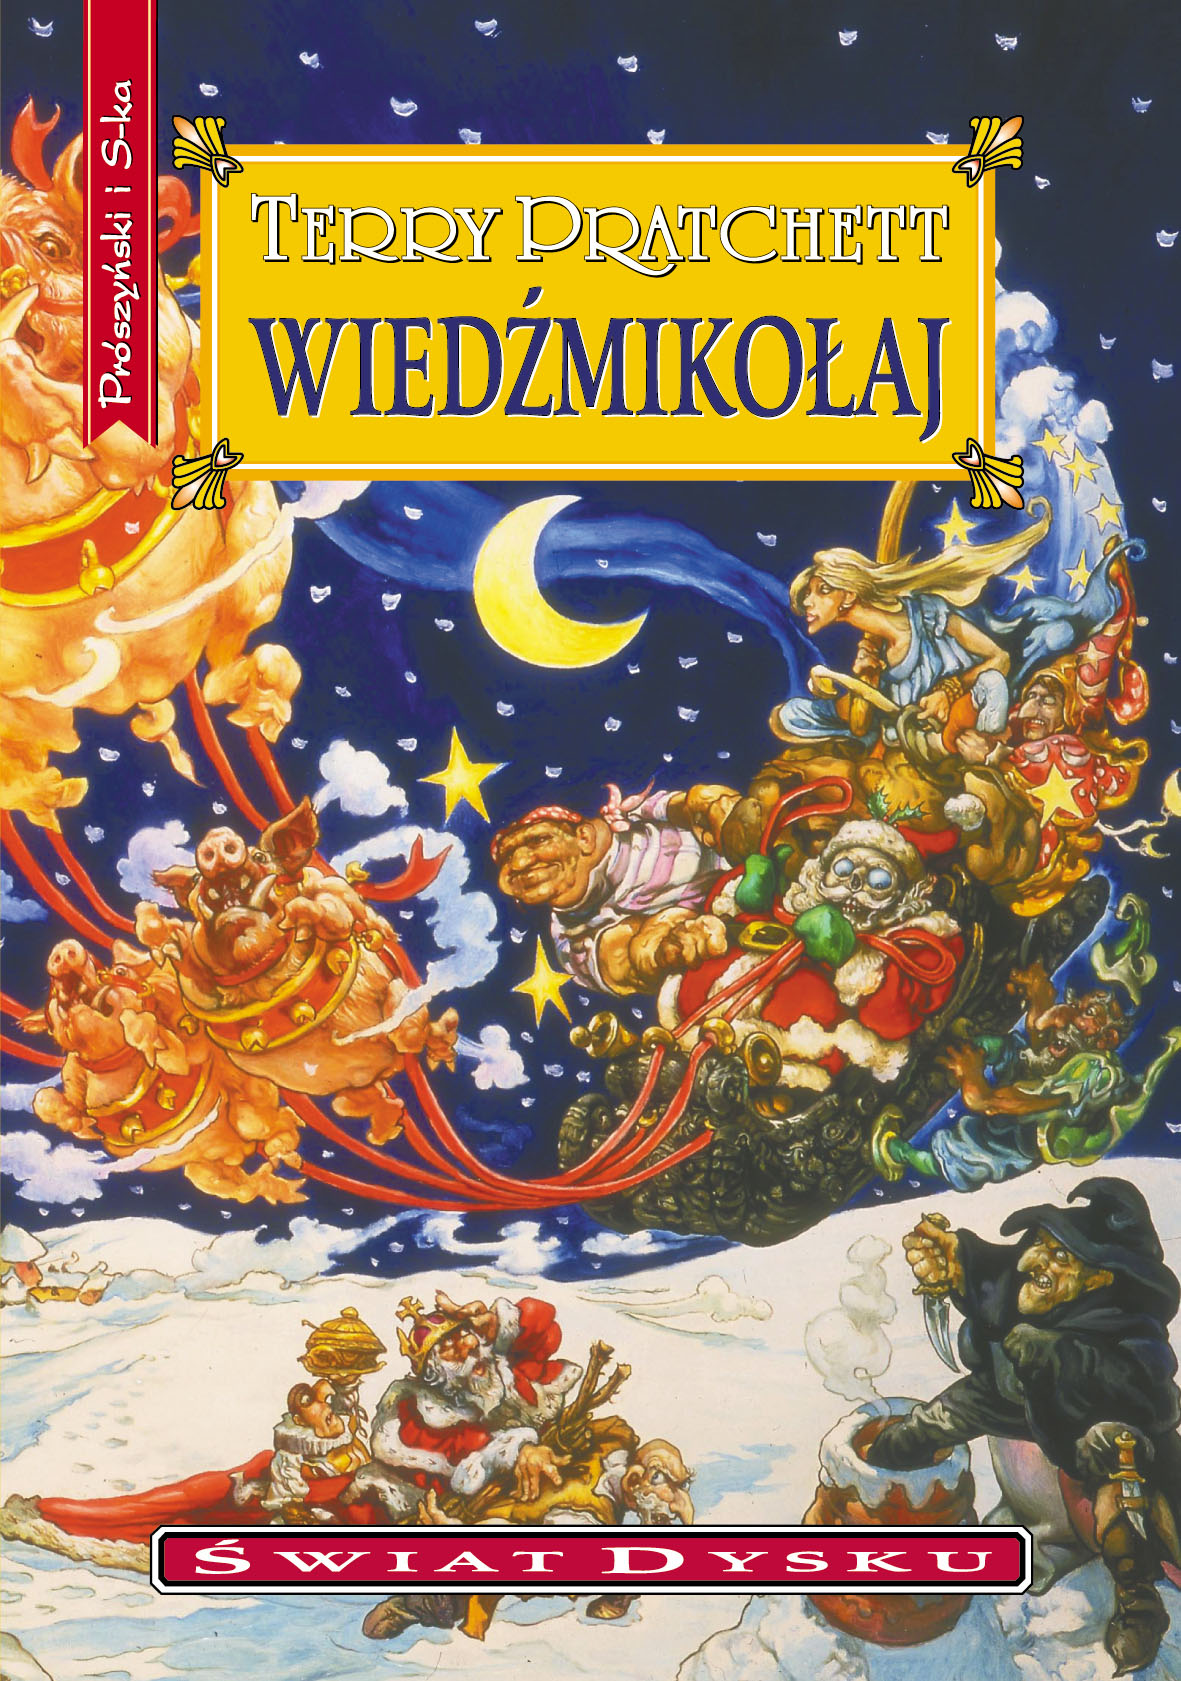 :: Wiedźmikołaj - e-book ::